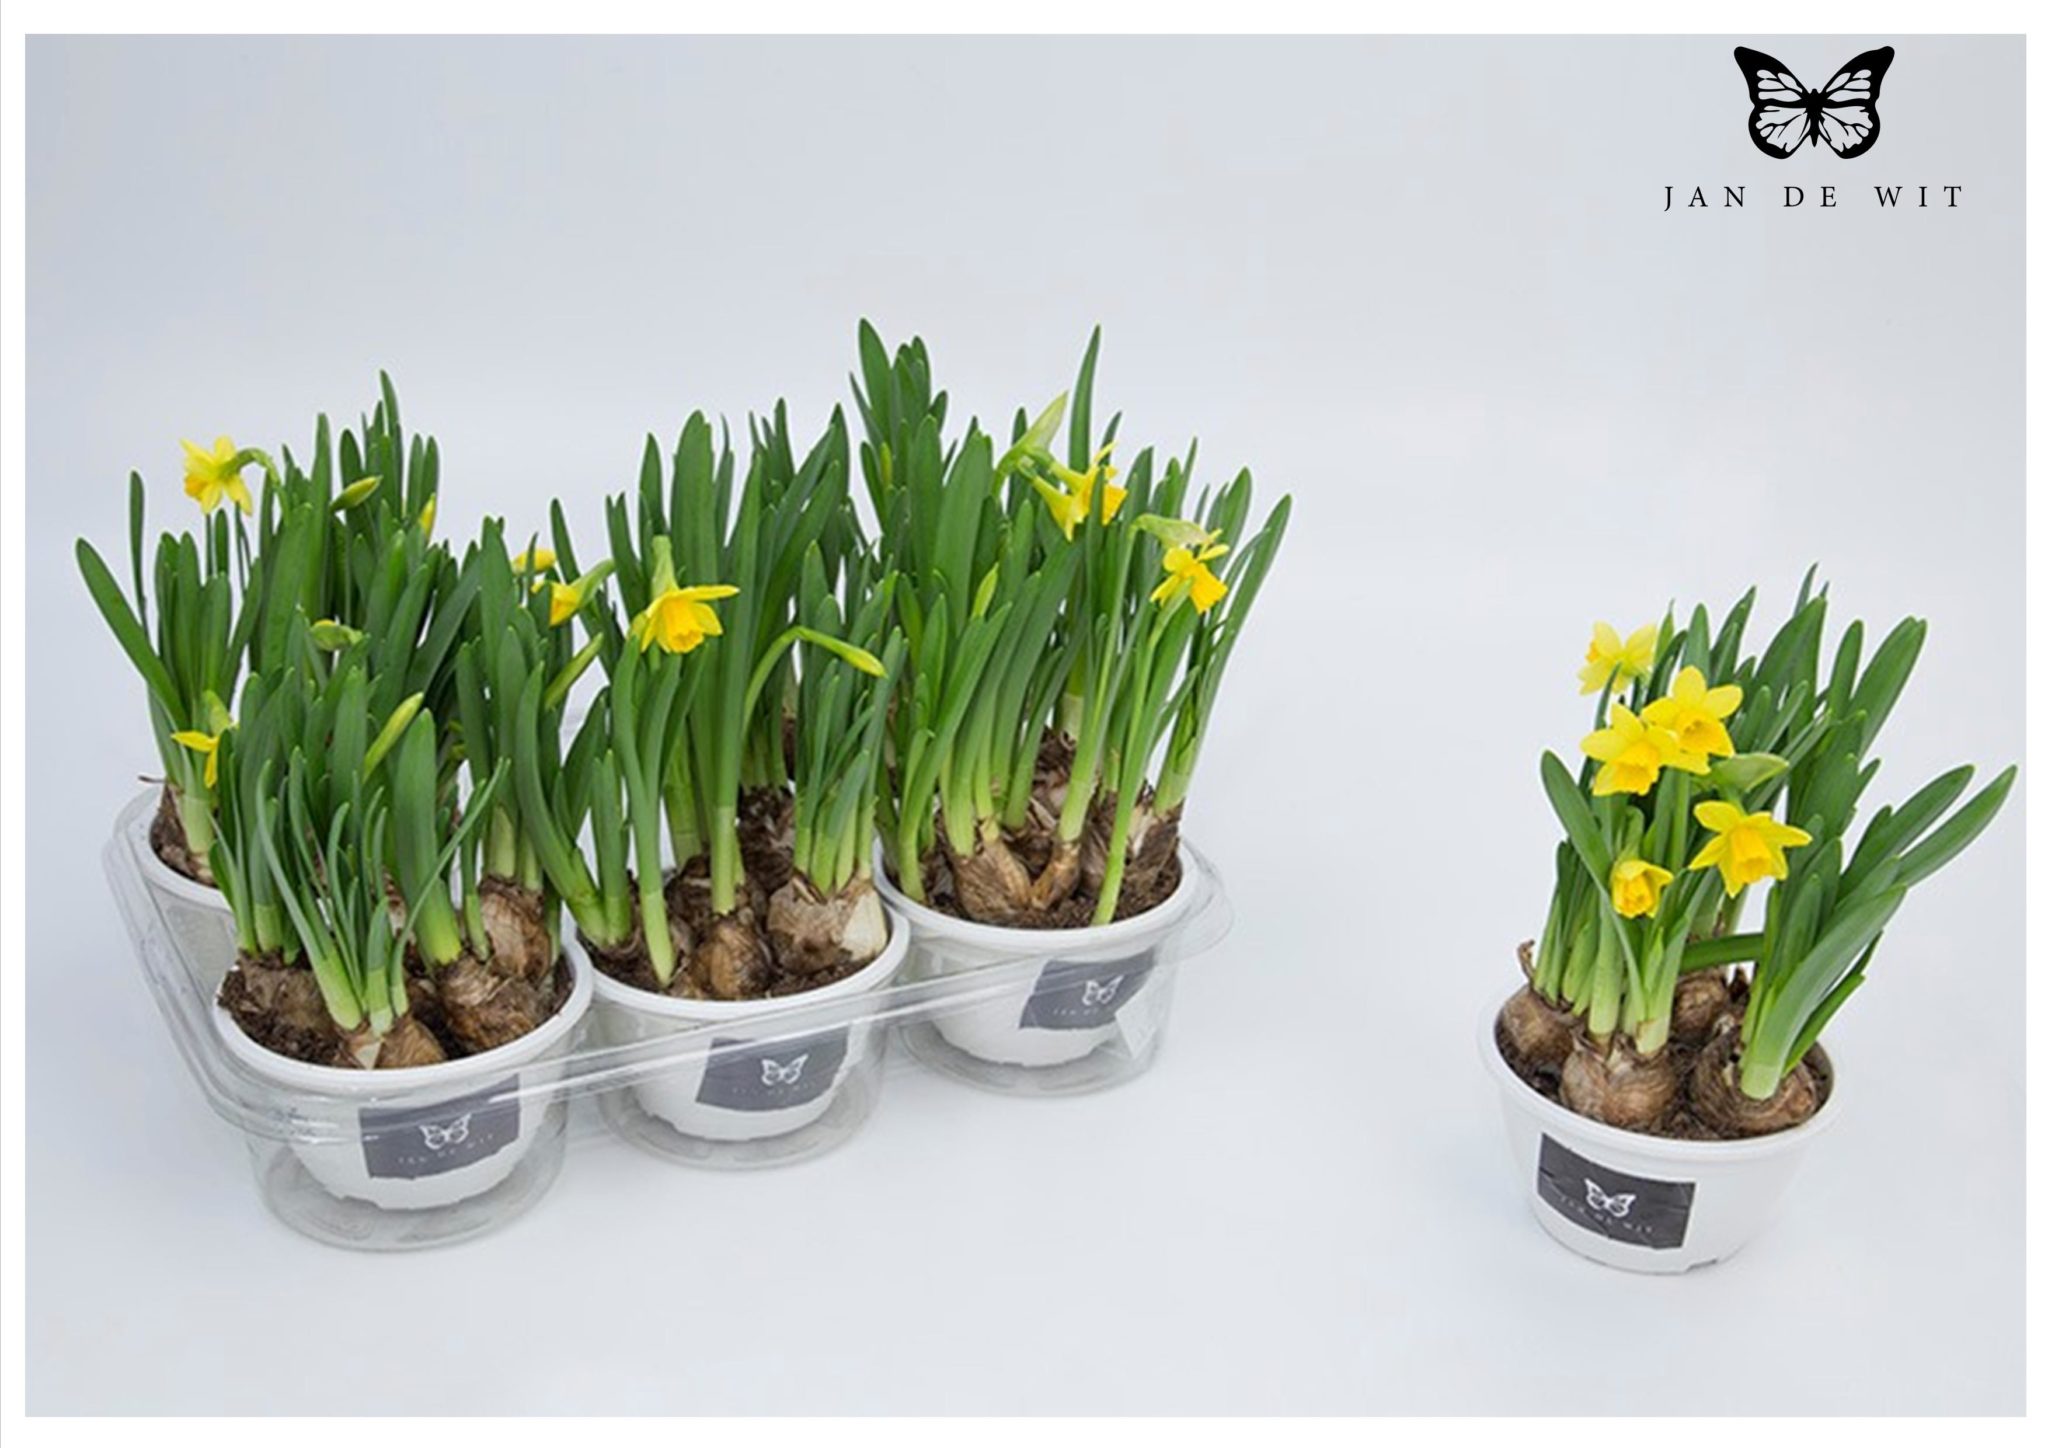 Fleurs produites par Jan de Wit Company (source http://www.jandewit.com.br/tulipas/)